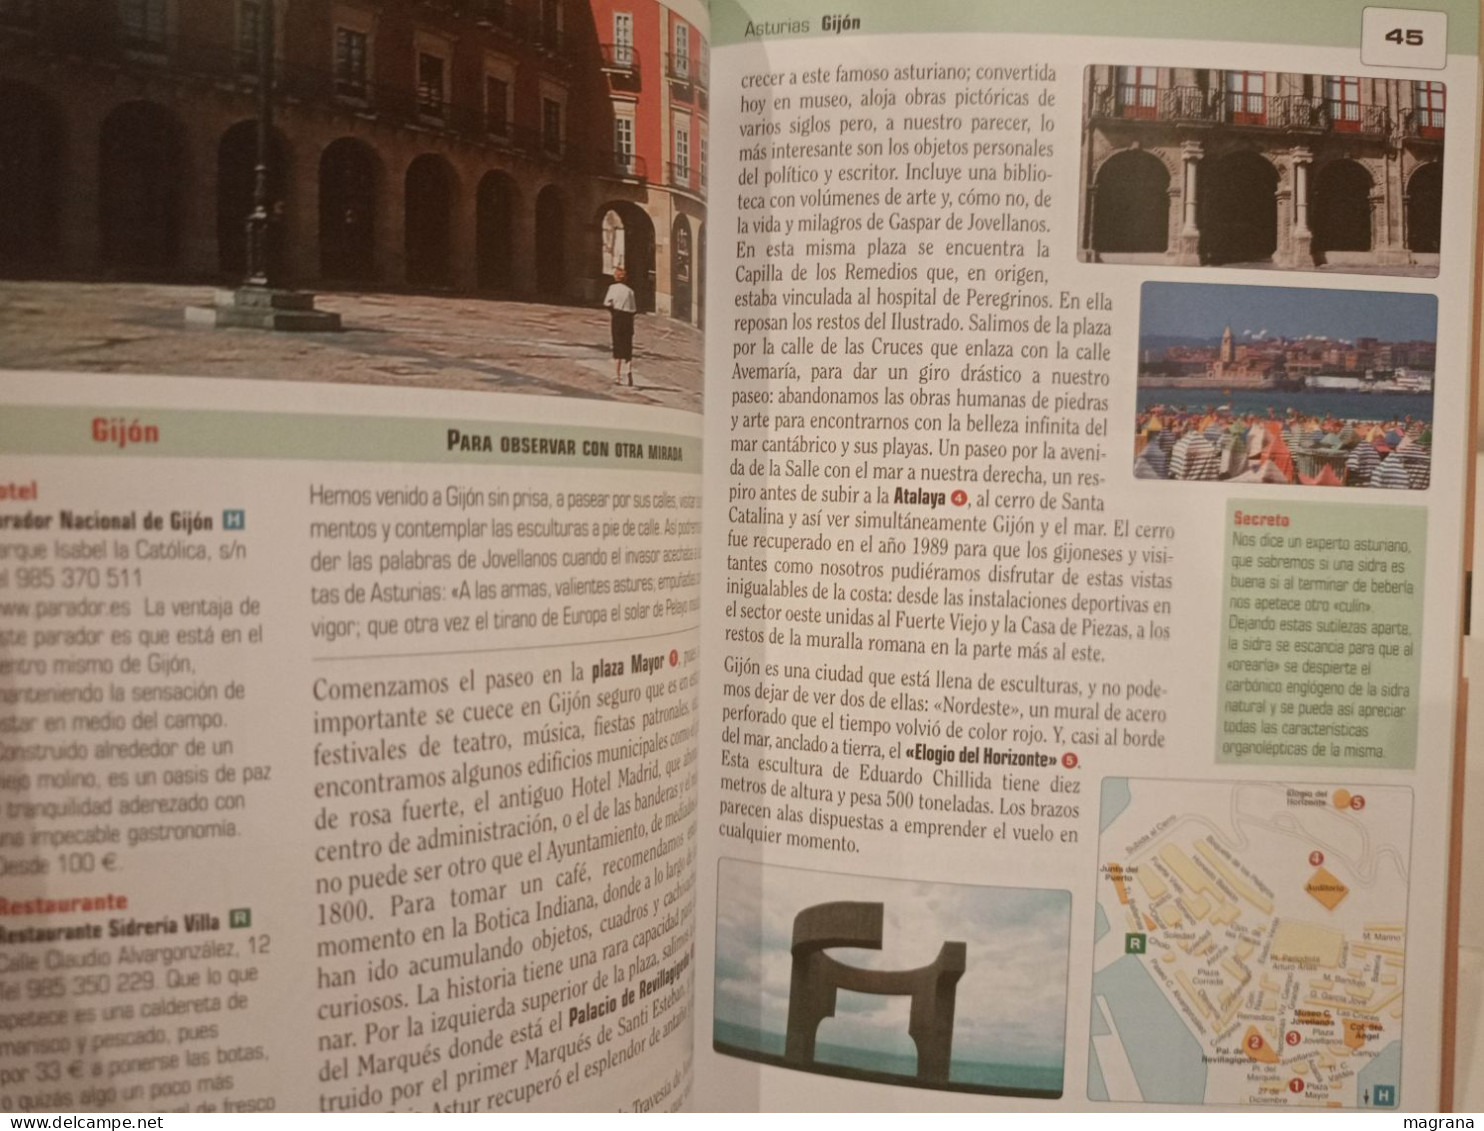 Los mejores paseos de España. Turismo de silencio. Editorial Salvat. 2006. 214 pp.